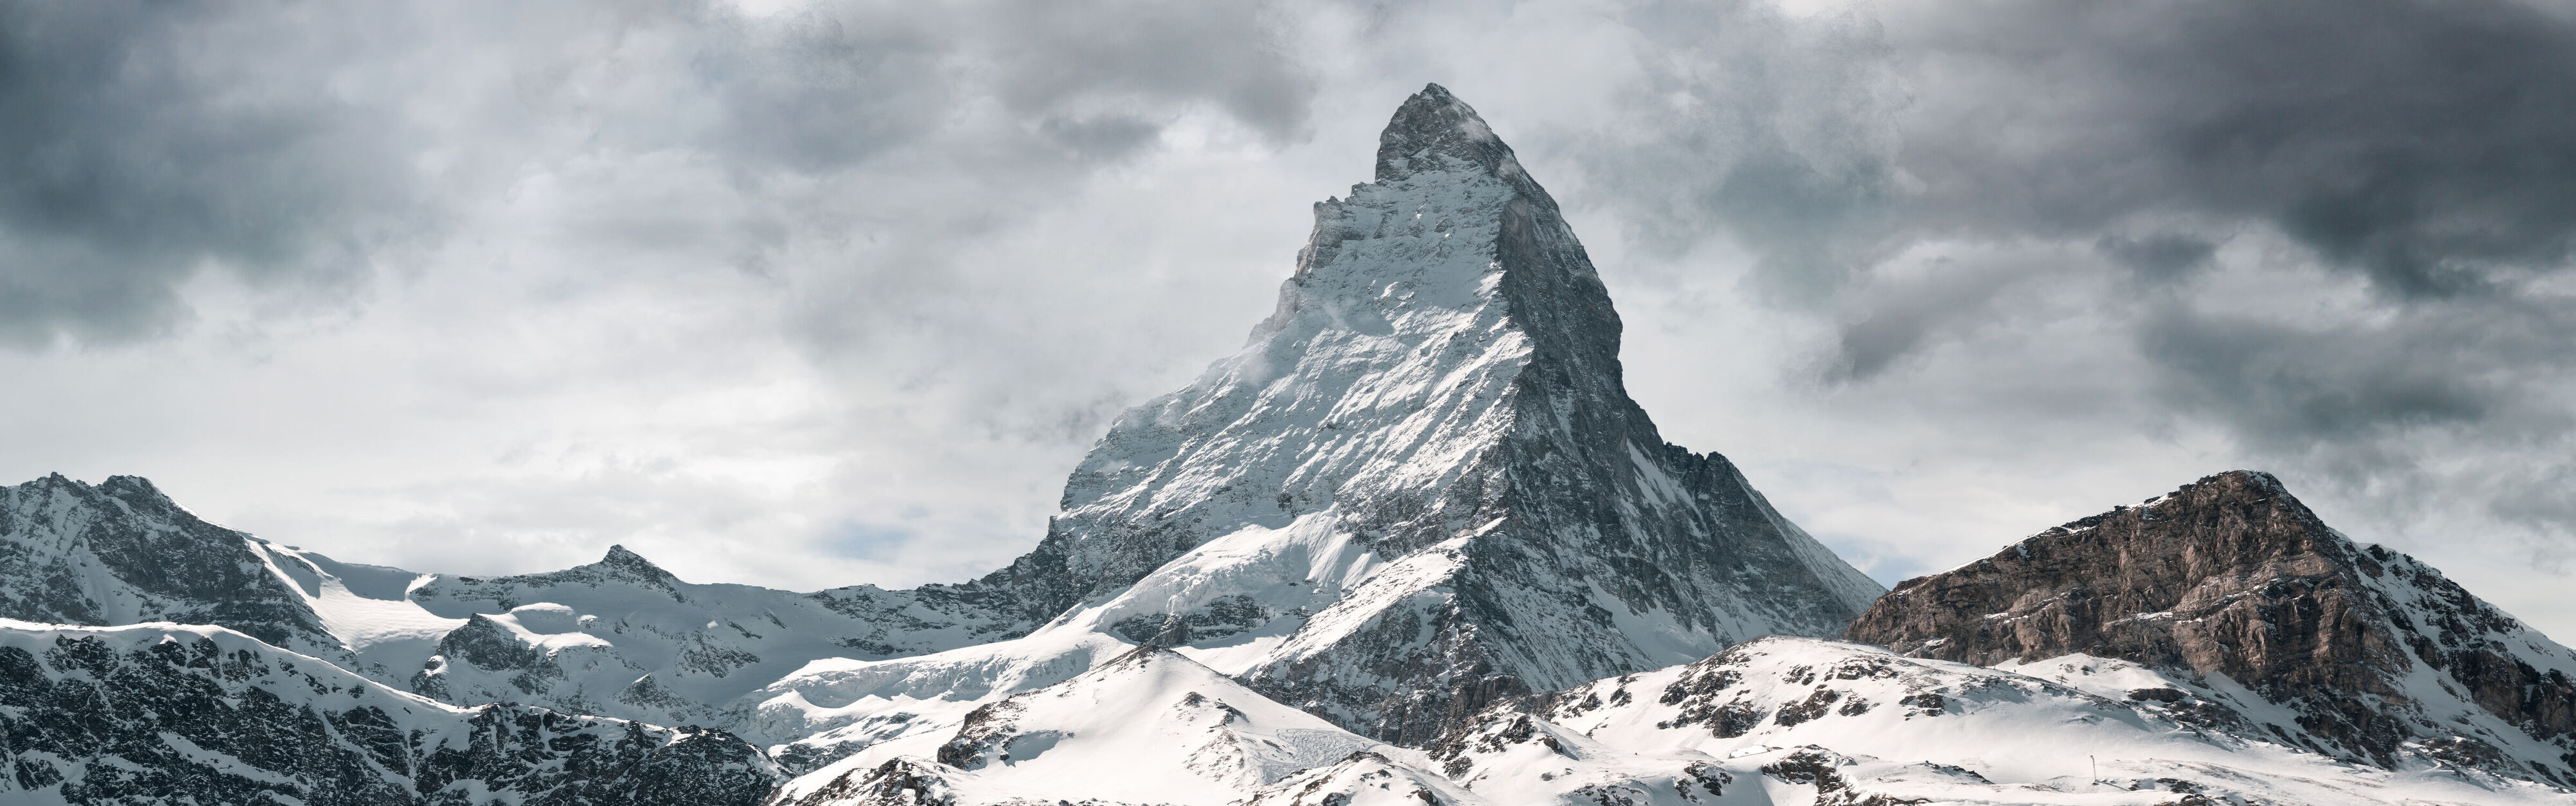 Bild mit Berge, Winter, Schnee, Alpen, Alpen Panorama, Schweiz, Wallis, Matterhorn, majestätisch